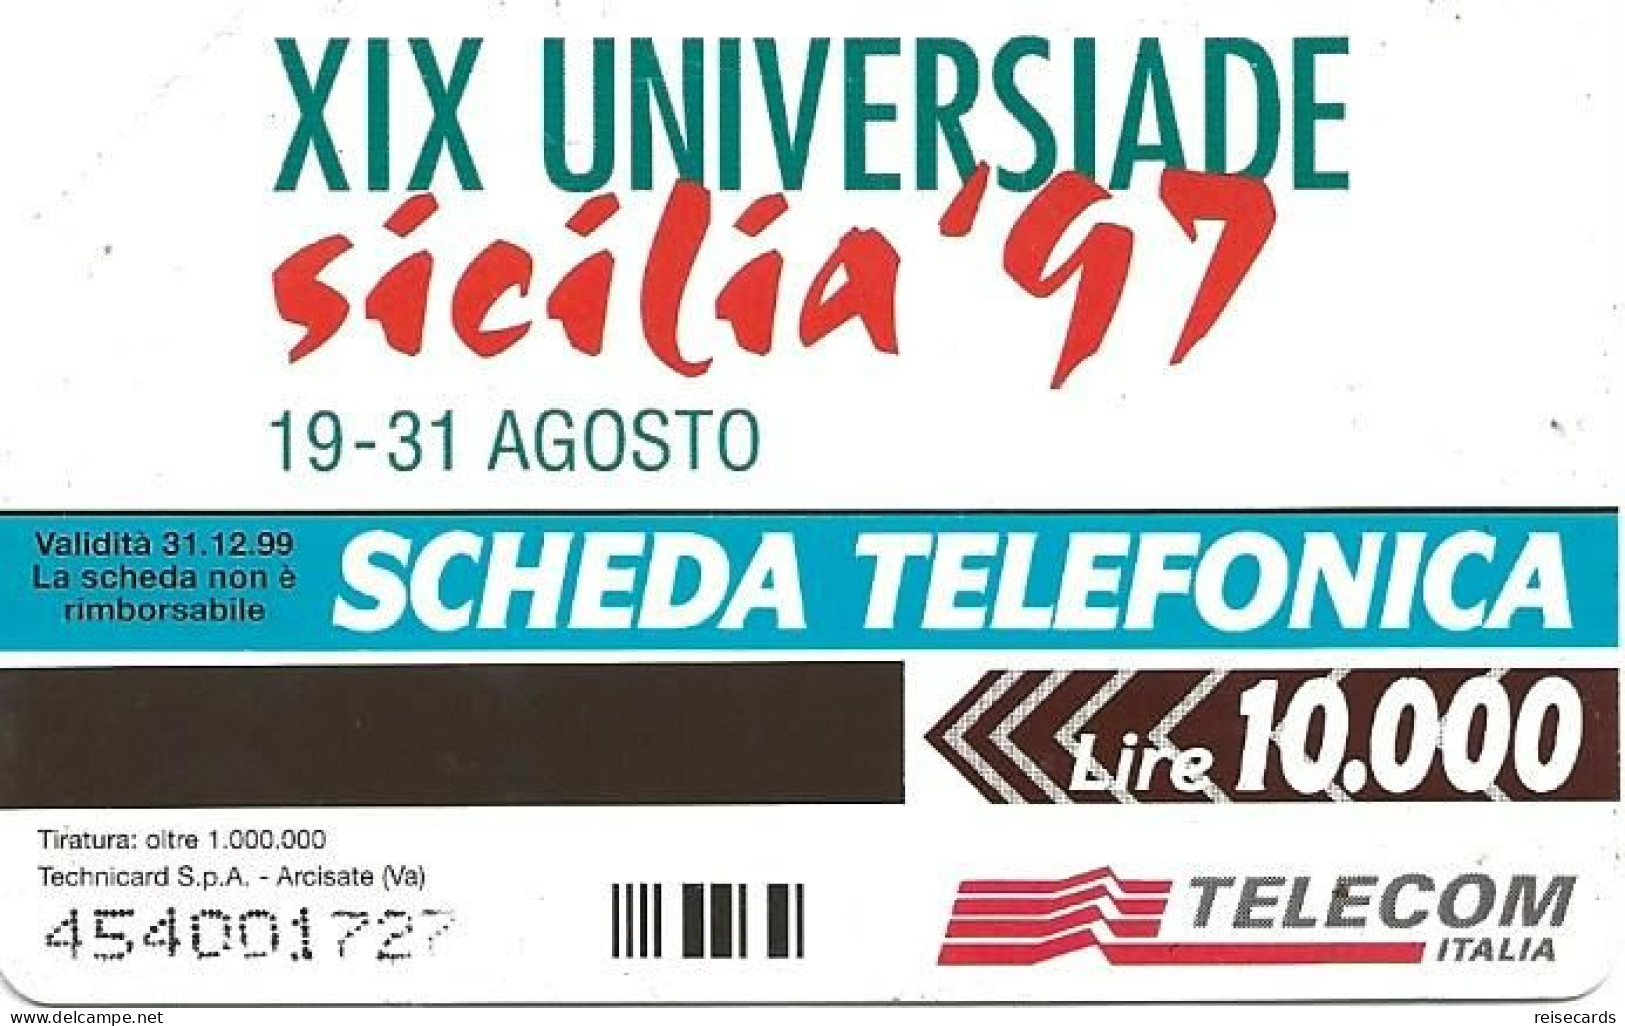 Italy: Telecom Italia - XIX Universiade Sicilia '97, Archimede - Openbare Reclame